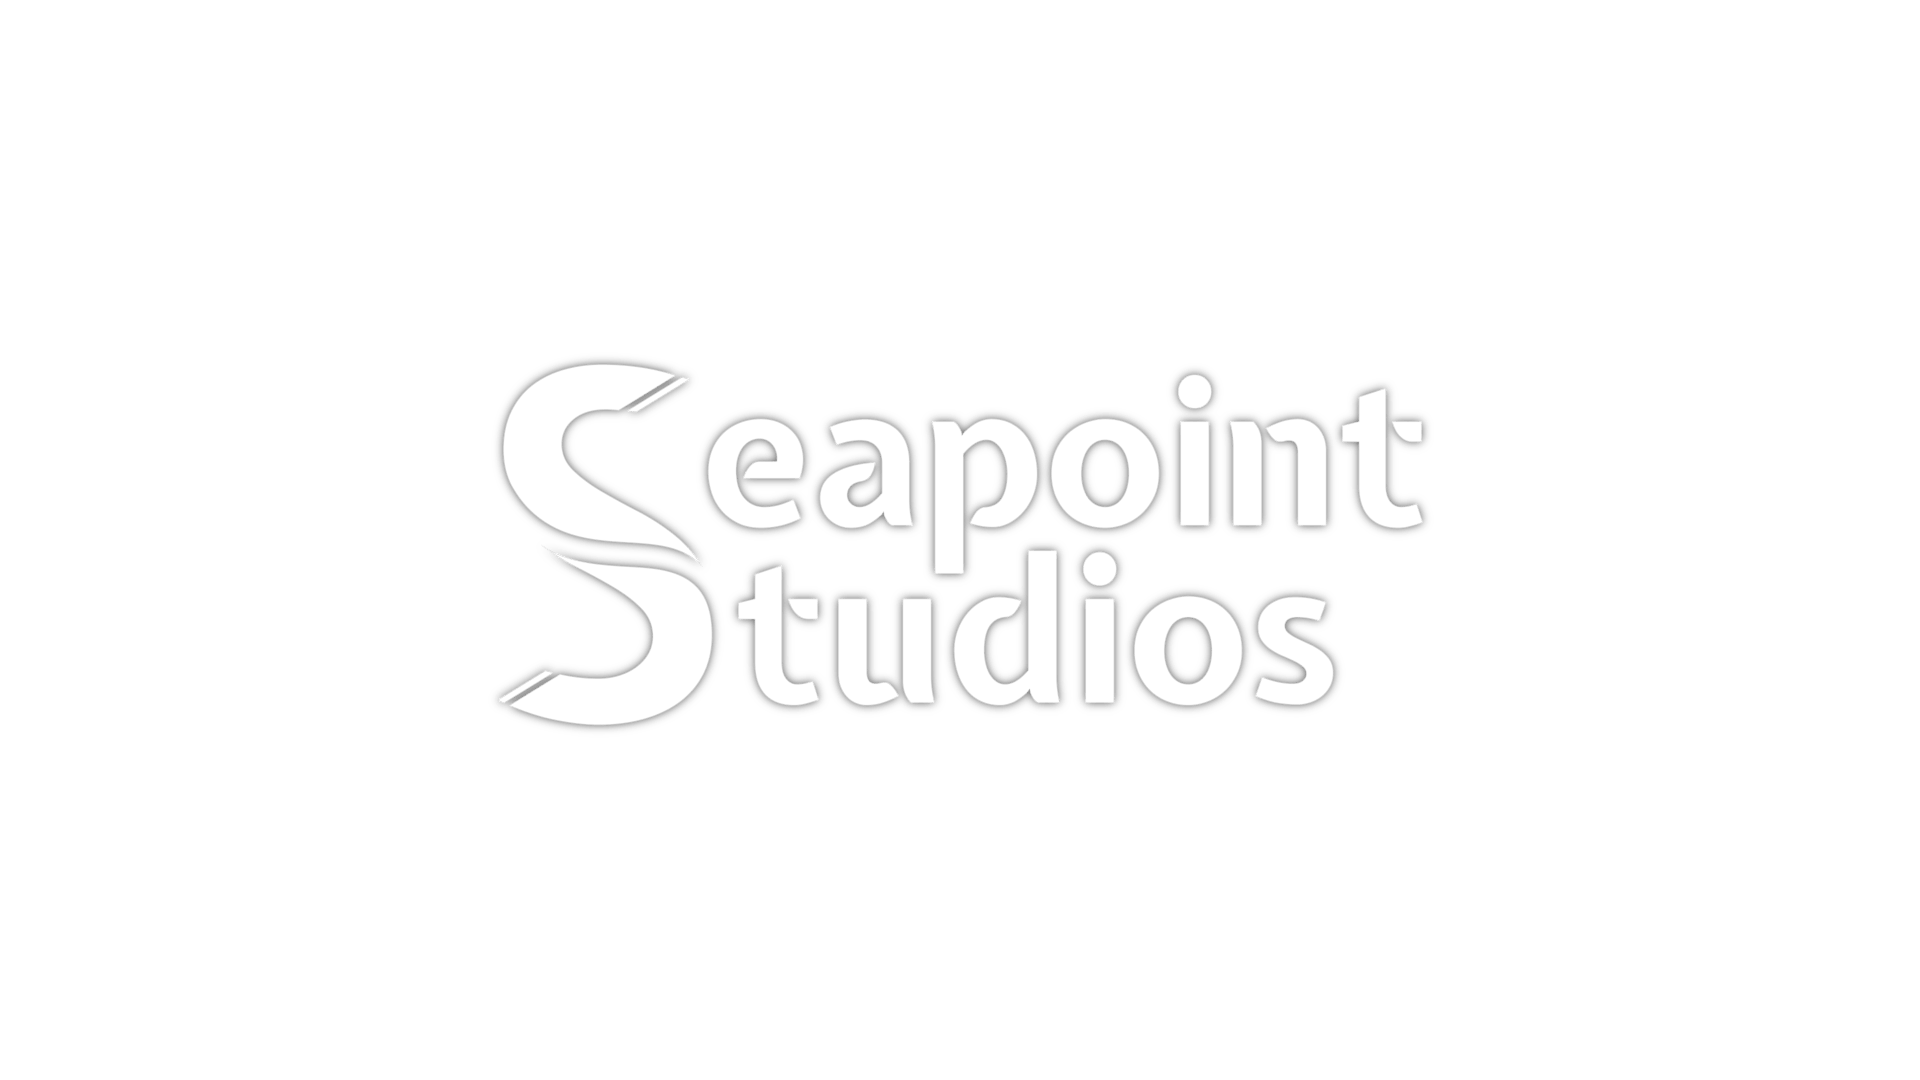 Seapoint Studios